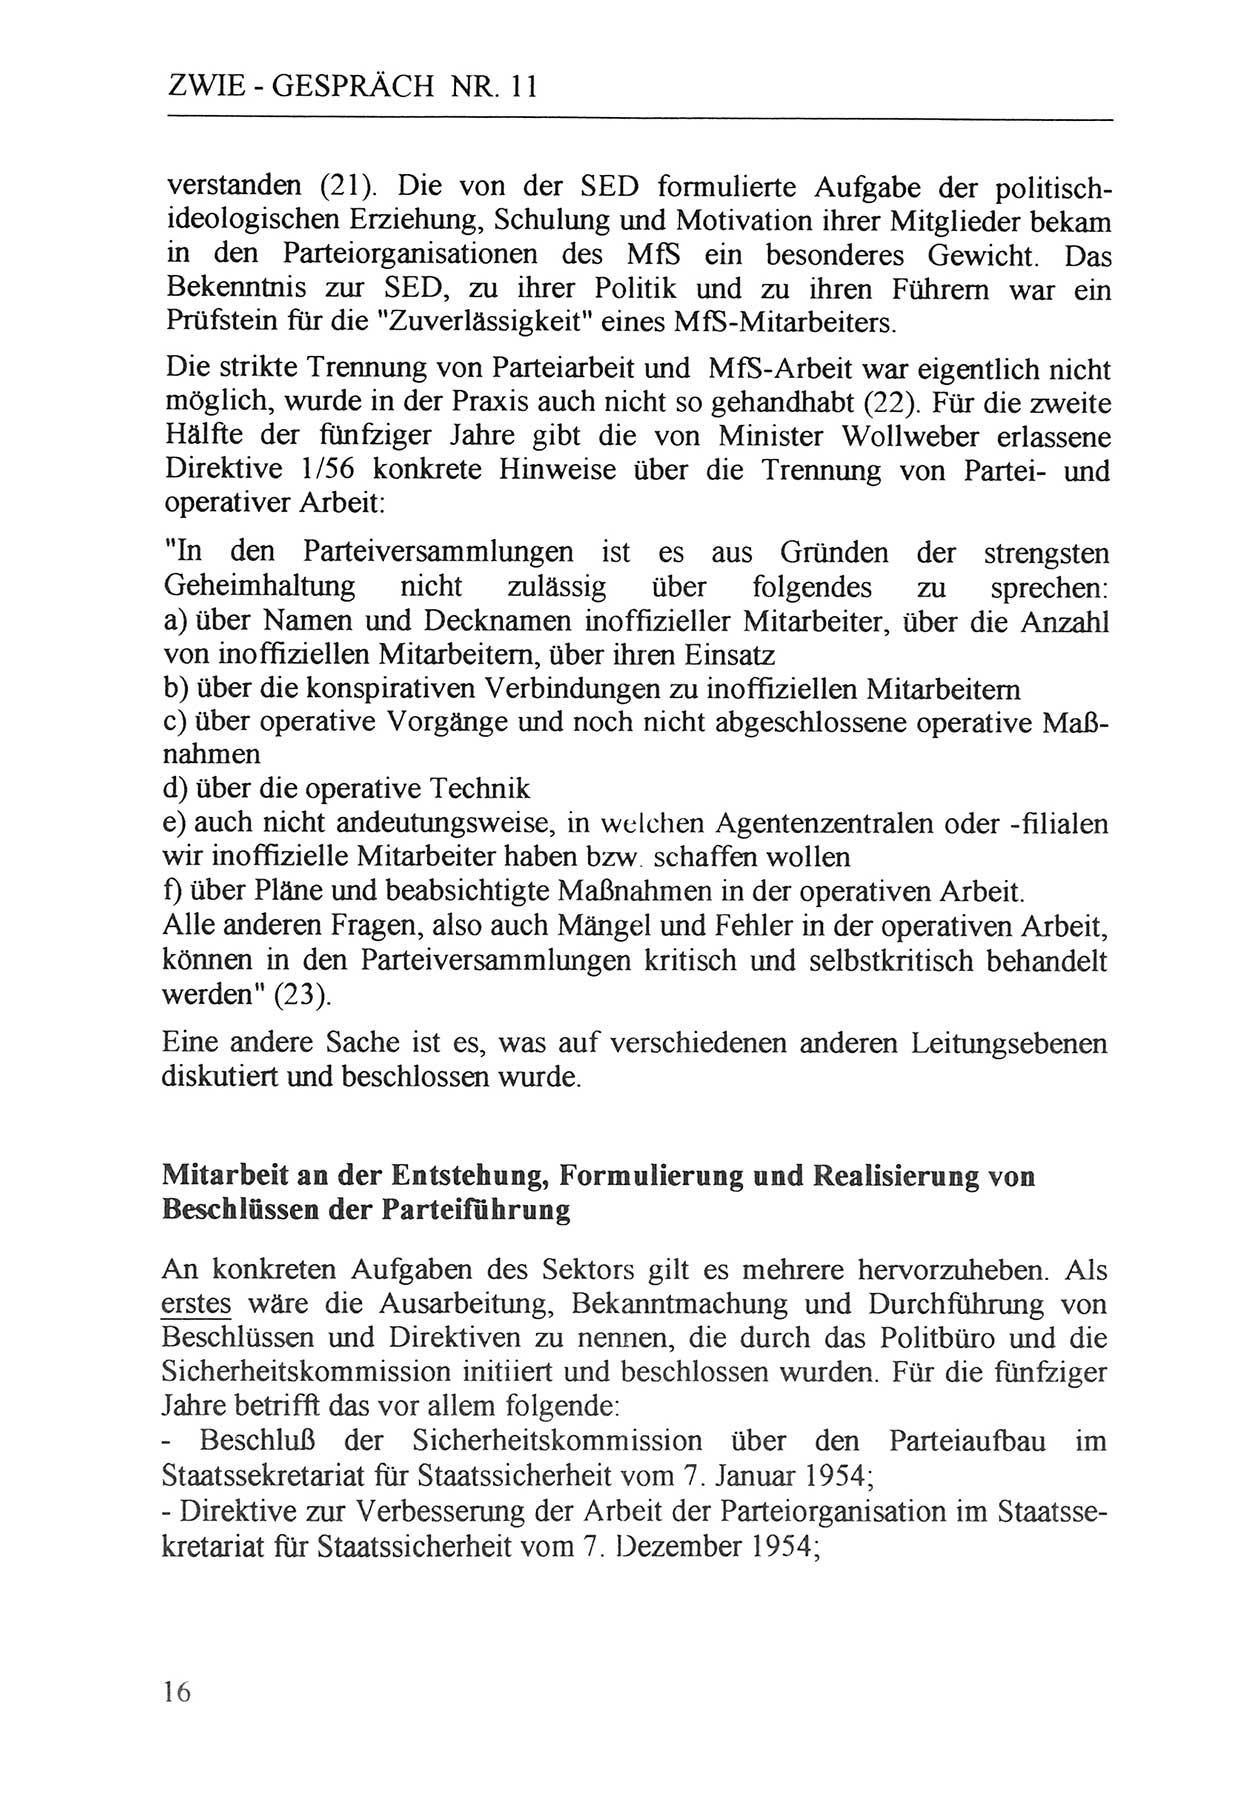 Zwie-Gespräch, Beiträge zur Aufarbeitung der Staatssicherheits-Vergangenheit [Deutsche Demokratische Republik (DDR)], Ausgabe Nr. 11, Berlin 1992, Seite 16 (Zwie-Gespr. Ausg. 11 1992, S. 16)